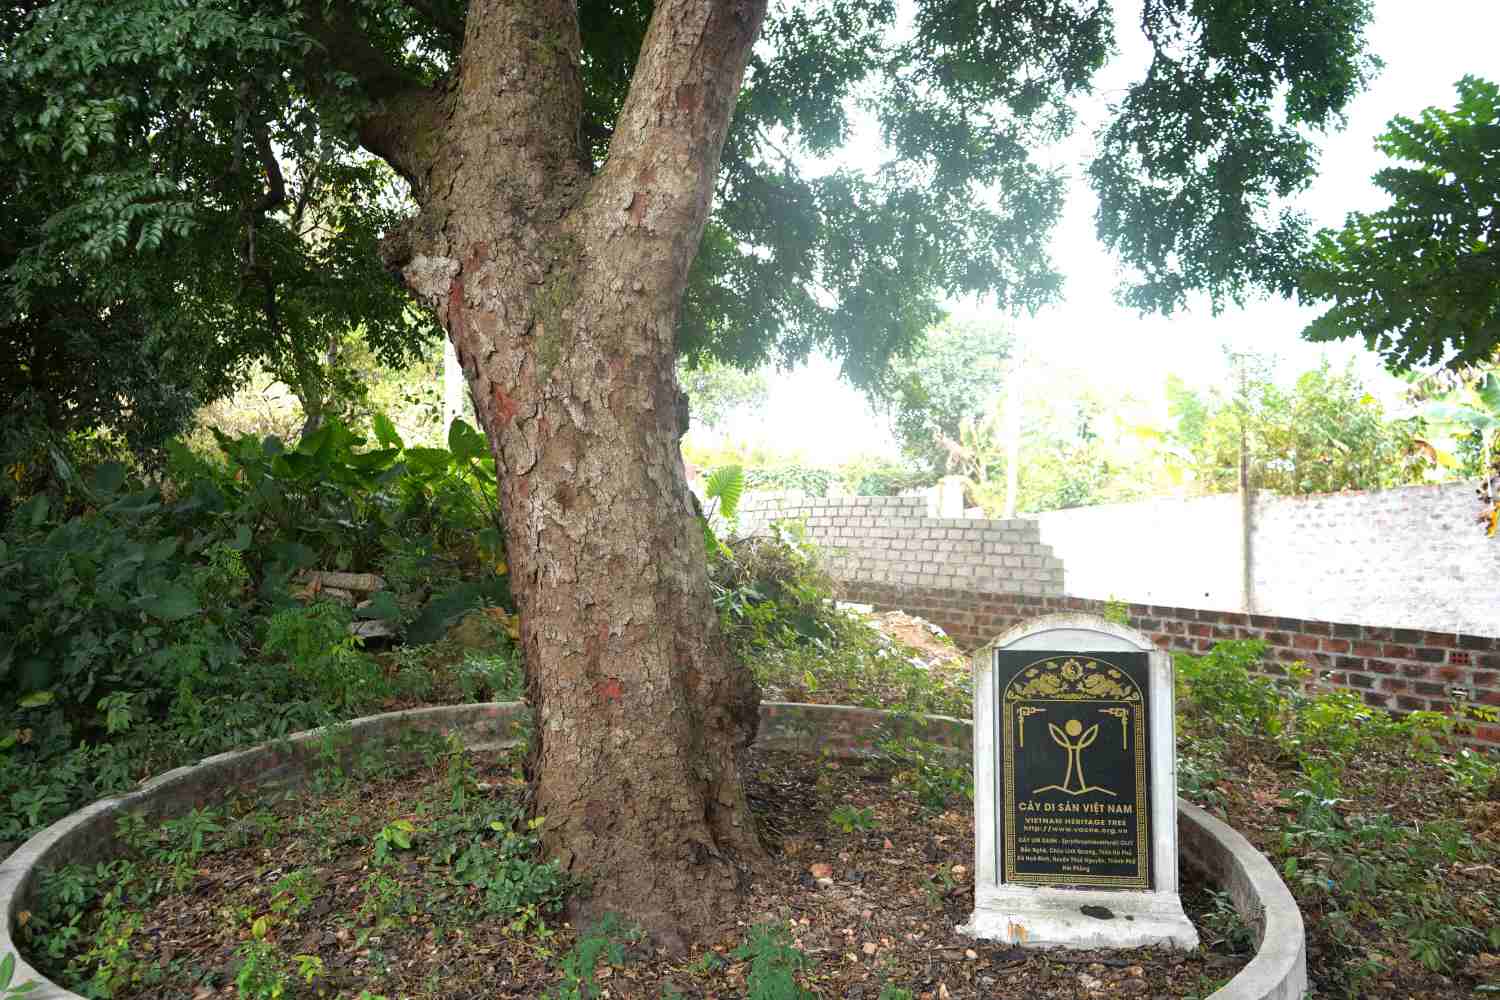 Người dân làng Hà Phú xem cây lim như báu vật nghìn năm tuổi vì cây gắn liền với lịch sử của địa phương. Hiện, cây phát triển xanh tốt, sạch sâu bệnh, được bảo quản, chăm sóc trong khuôn viên đình Nghè. 